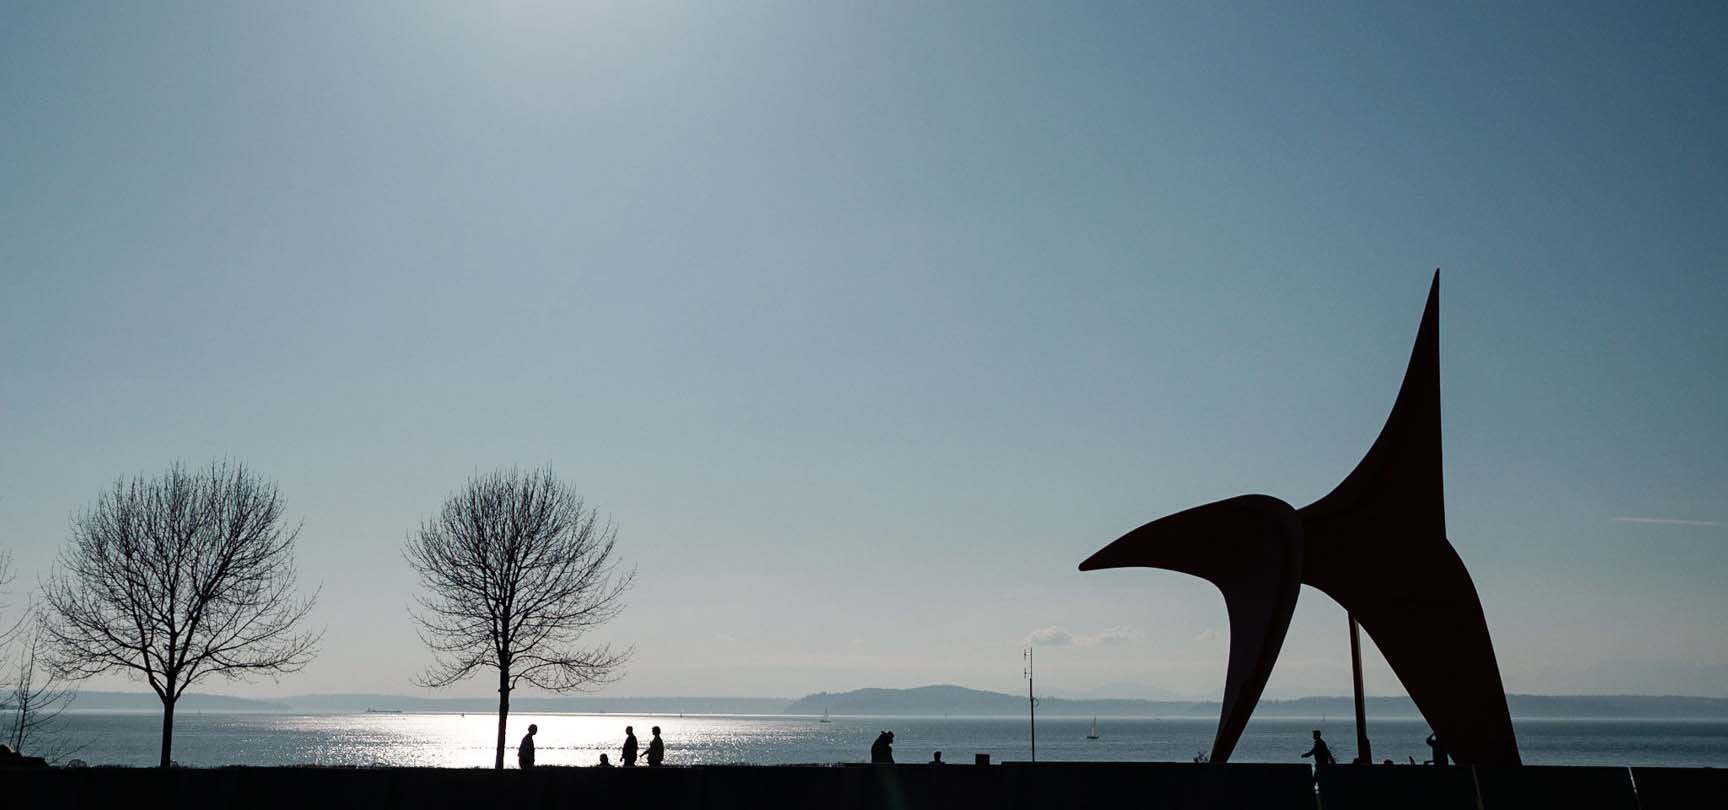 Horizon photograph with ocean, trees, people & outdoor sculpture art.